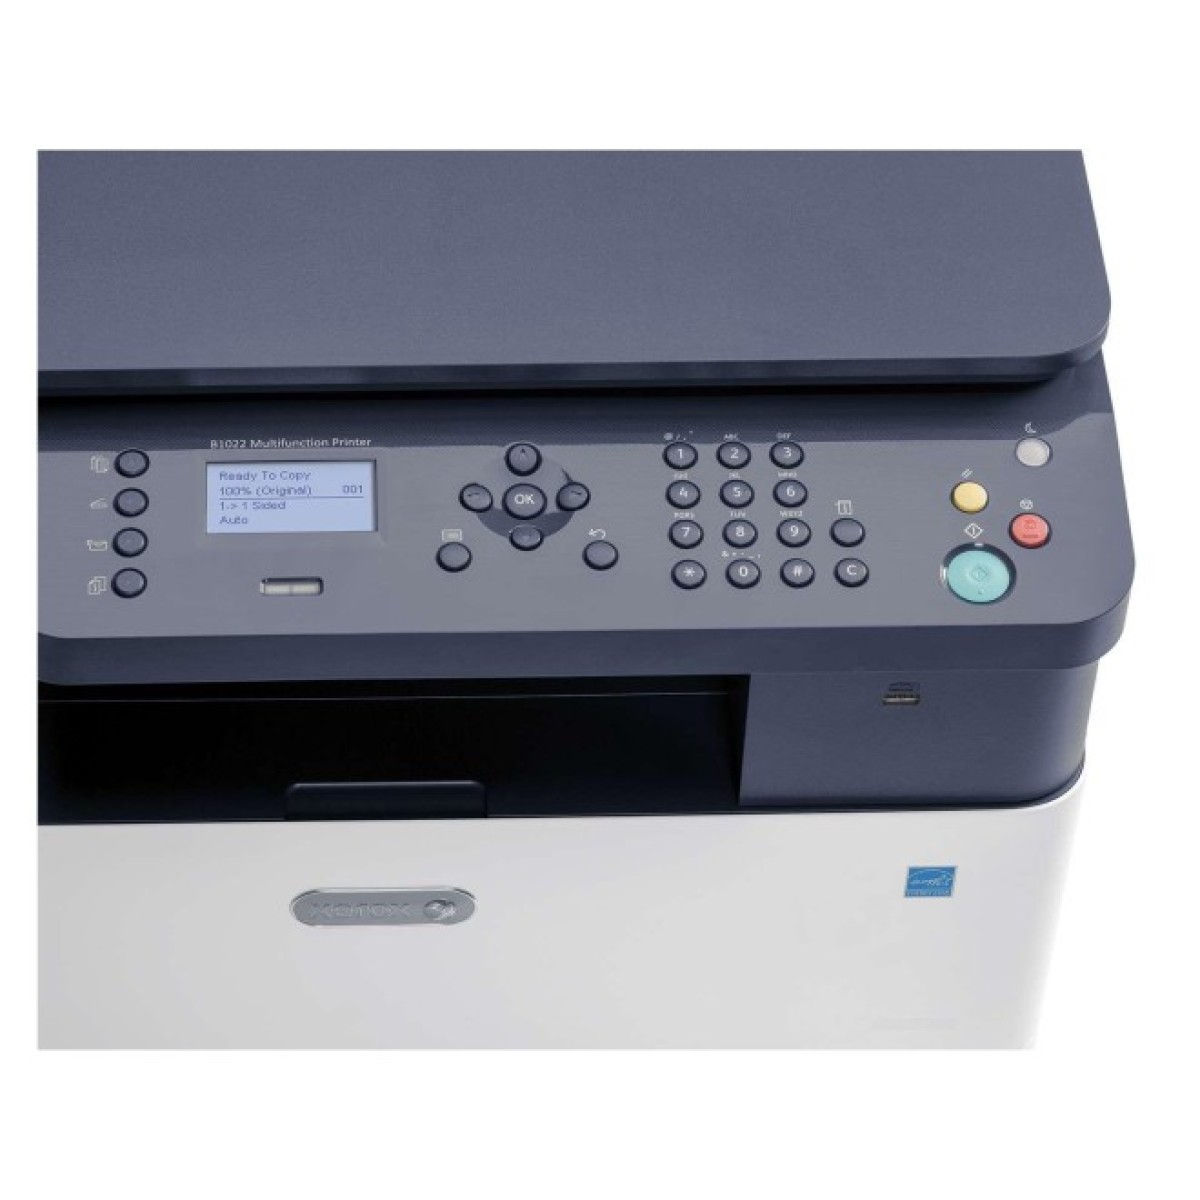 Багатофункціональний пристрій Xerox B1022 (B1022V_B) 98_98.jpg - фото 2